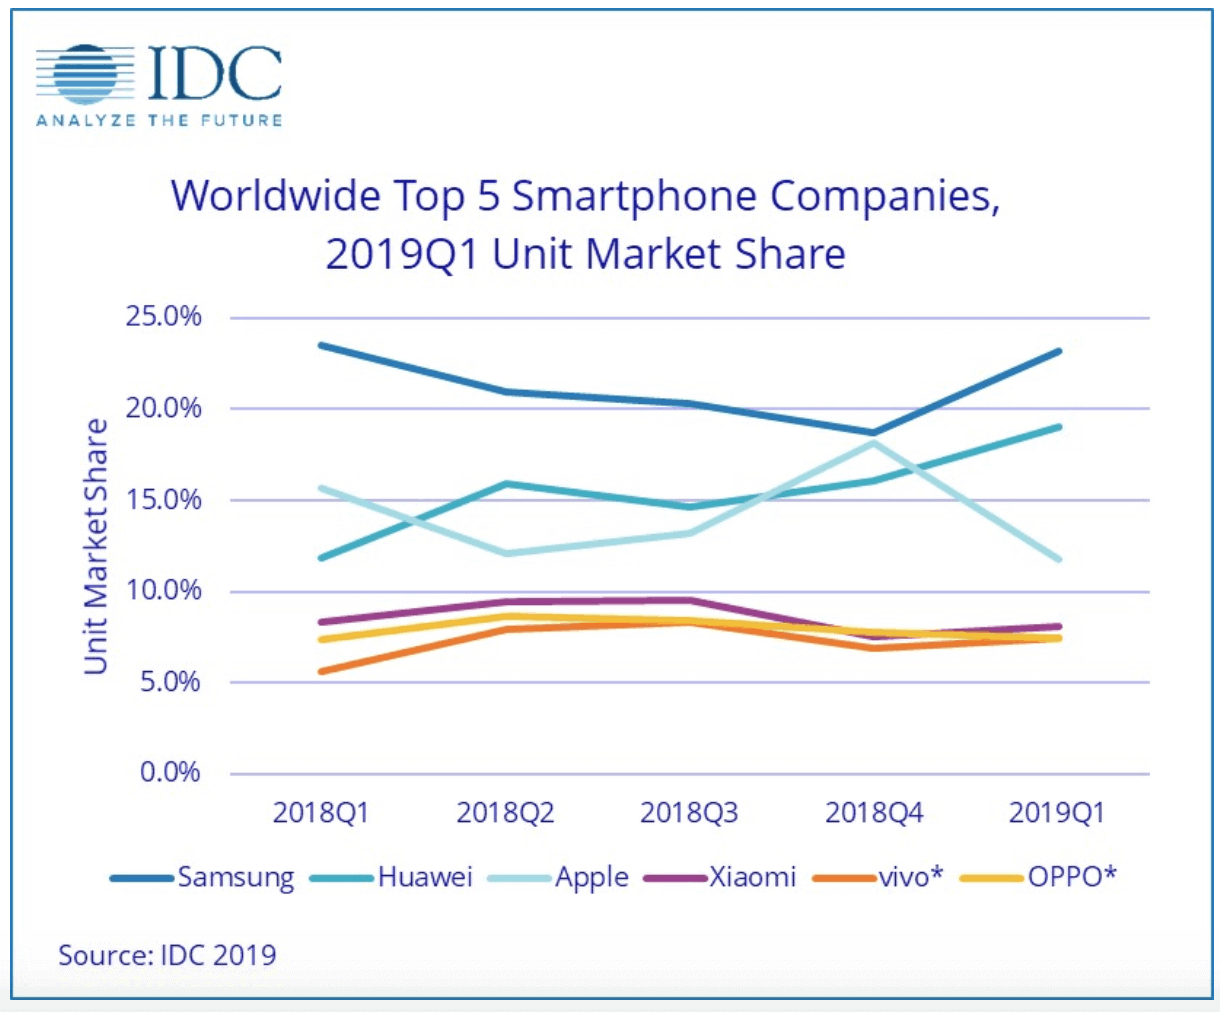 Weltweiter Marktanteil der Top 5 Smartphone Hersteller: Samsung, Huawei, Apple, Xiaomi, vivo, OPPO